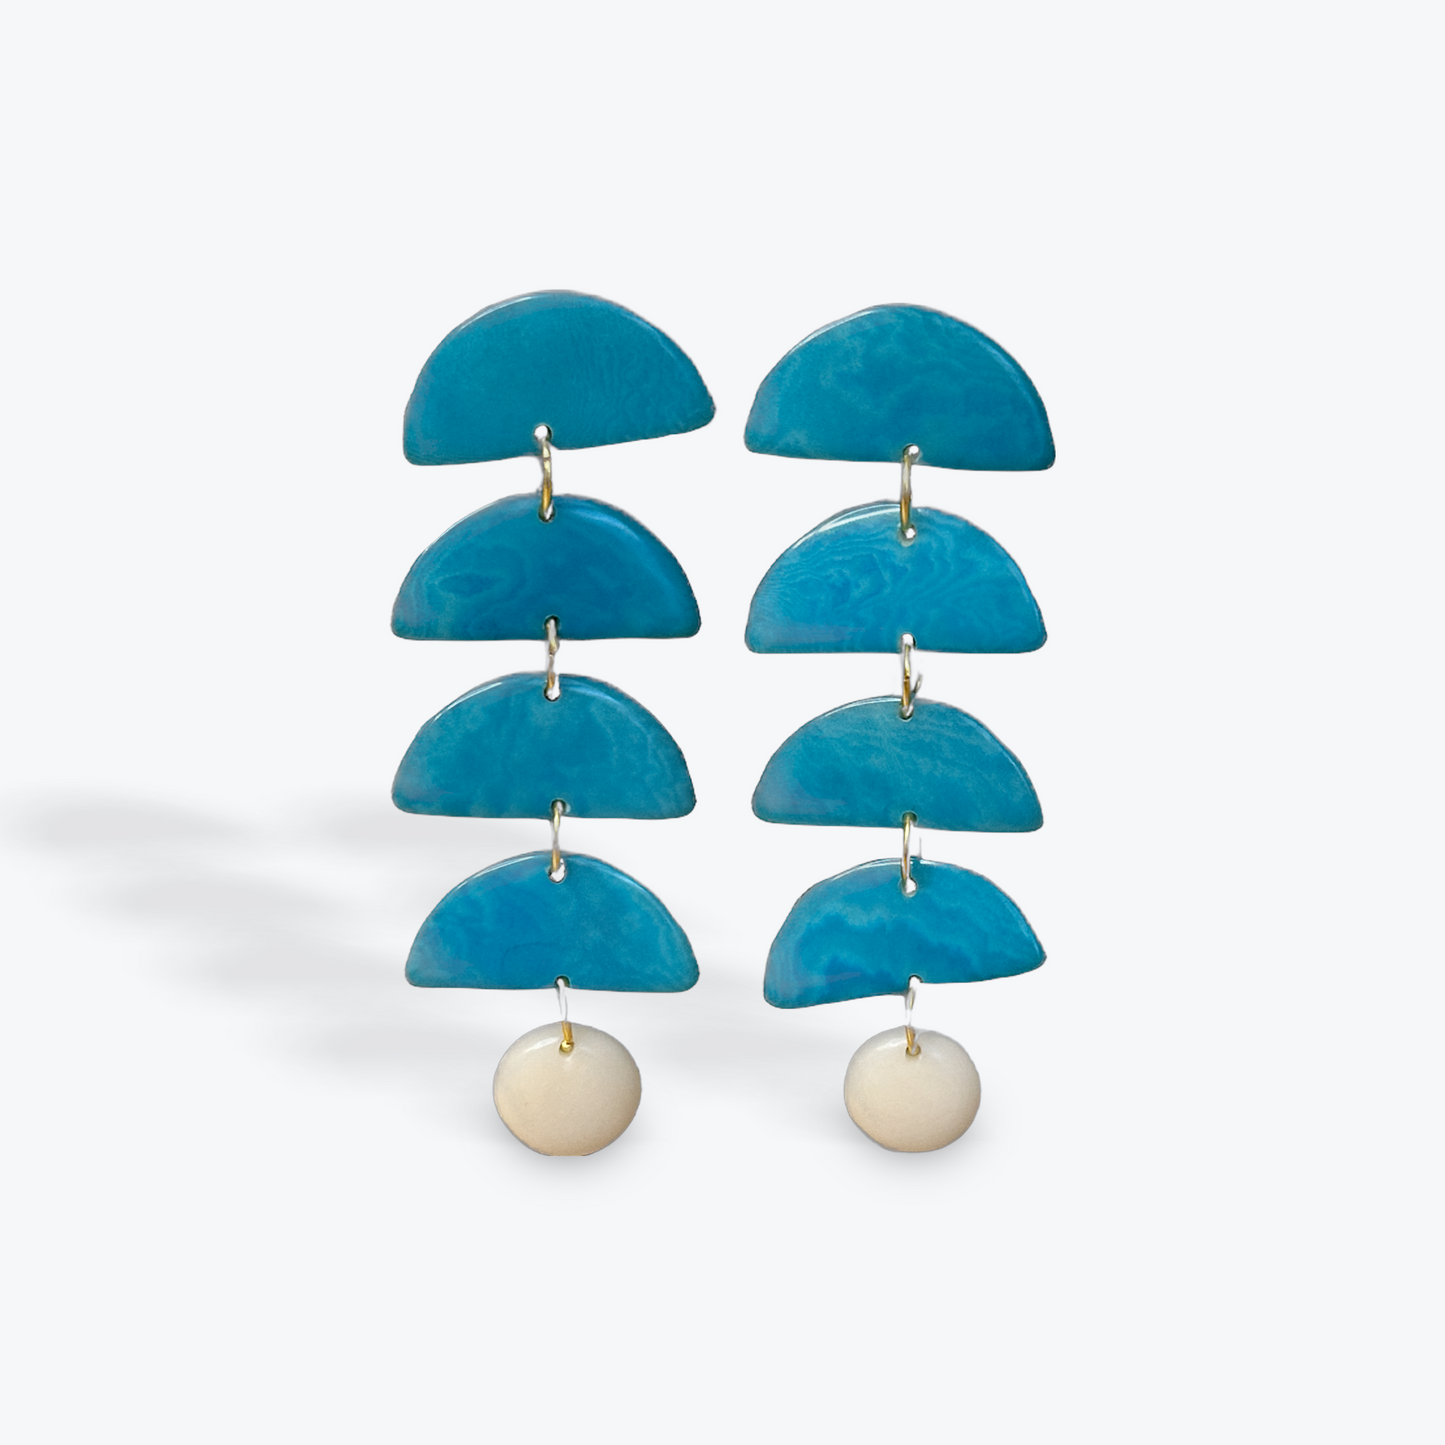 Tagua Drop Earrings | Tagua Nut Earrings - The Hip Hat 